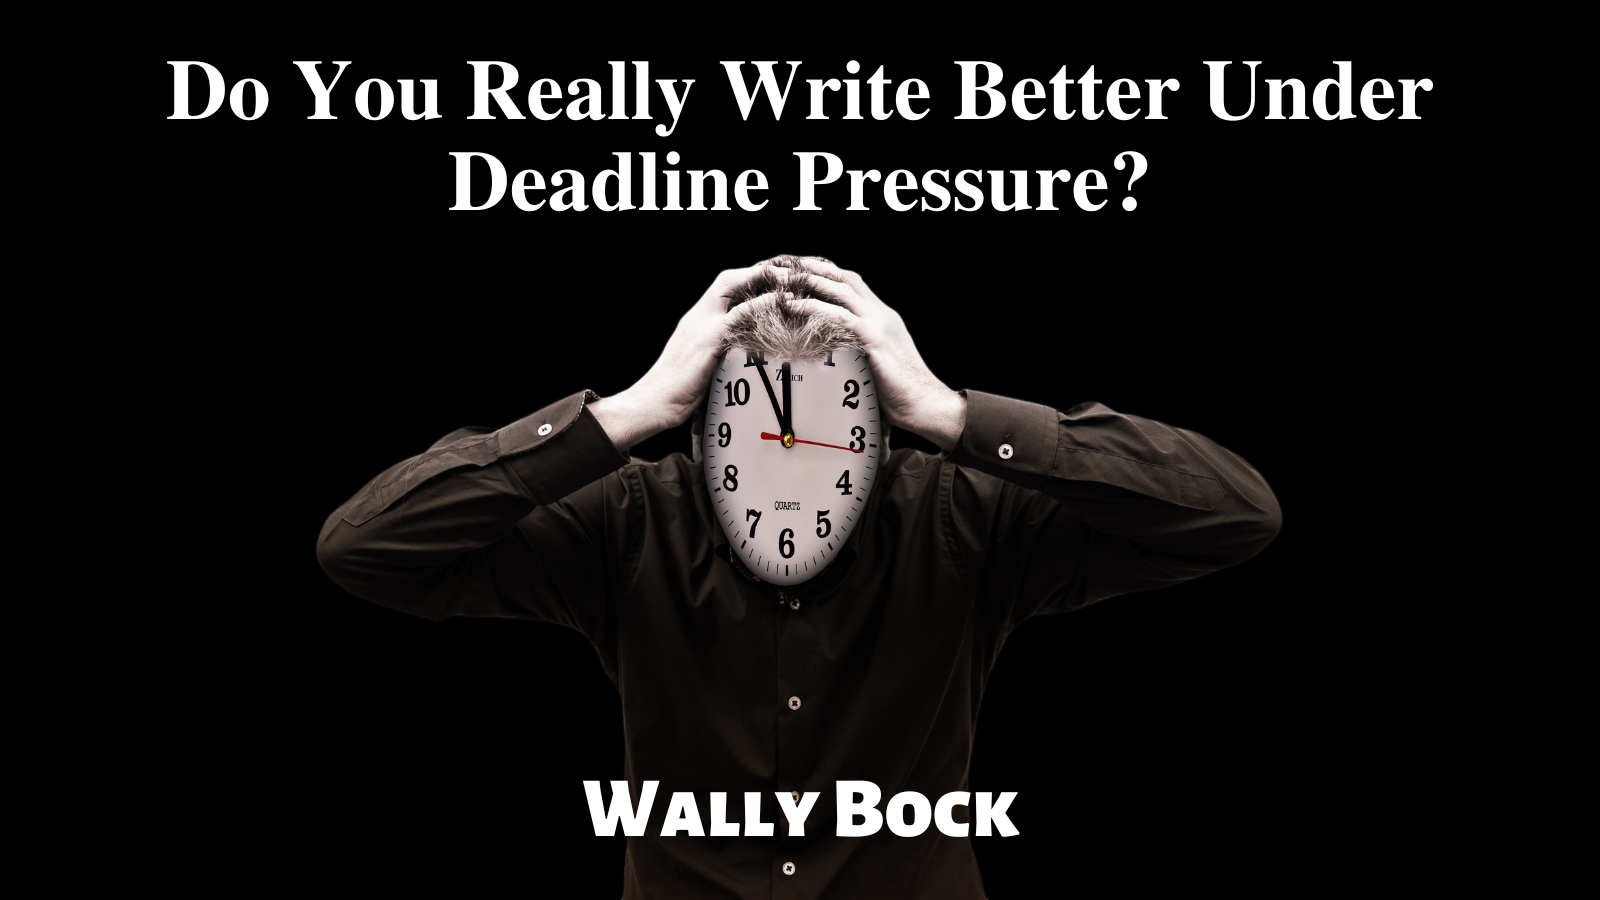 Do you really write better under deadline pressure?